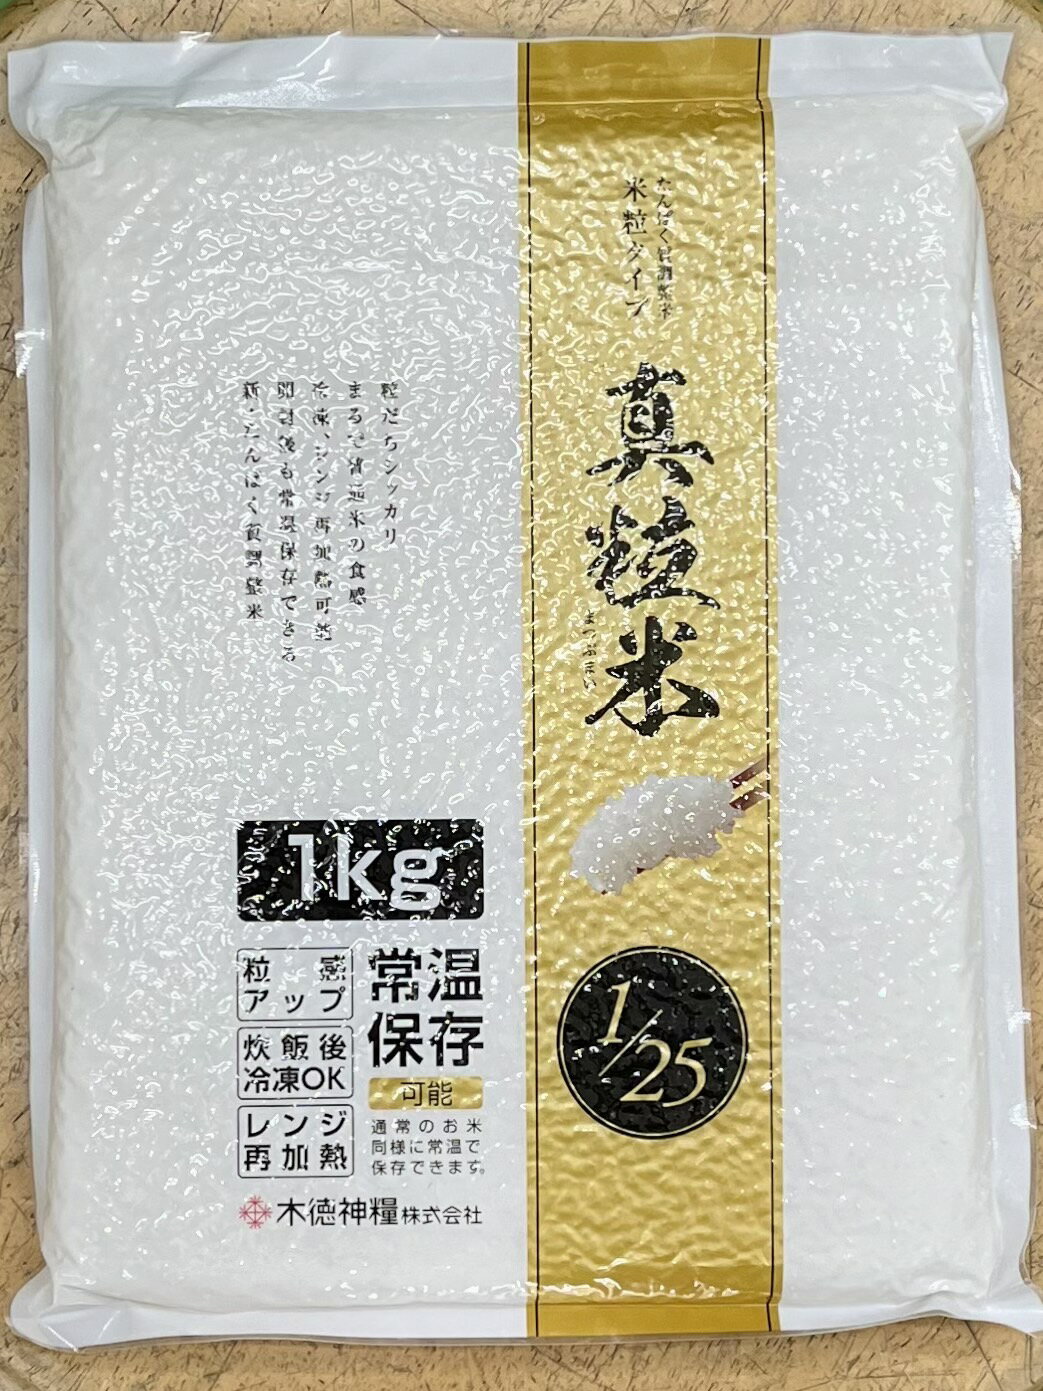 永大醫療~日本原裝進口零蛋白米一公斤950元/真粒米常溫保持